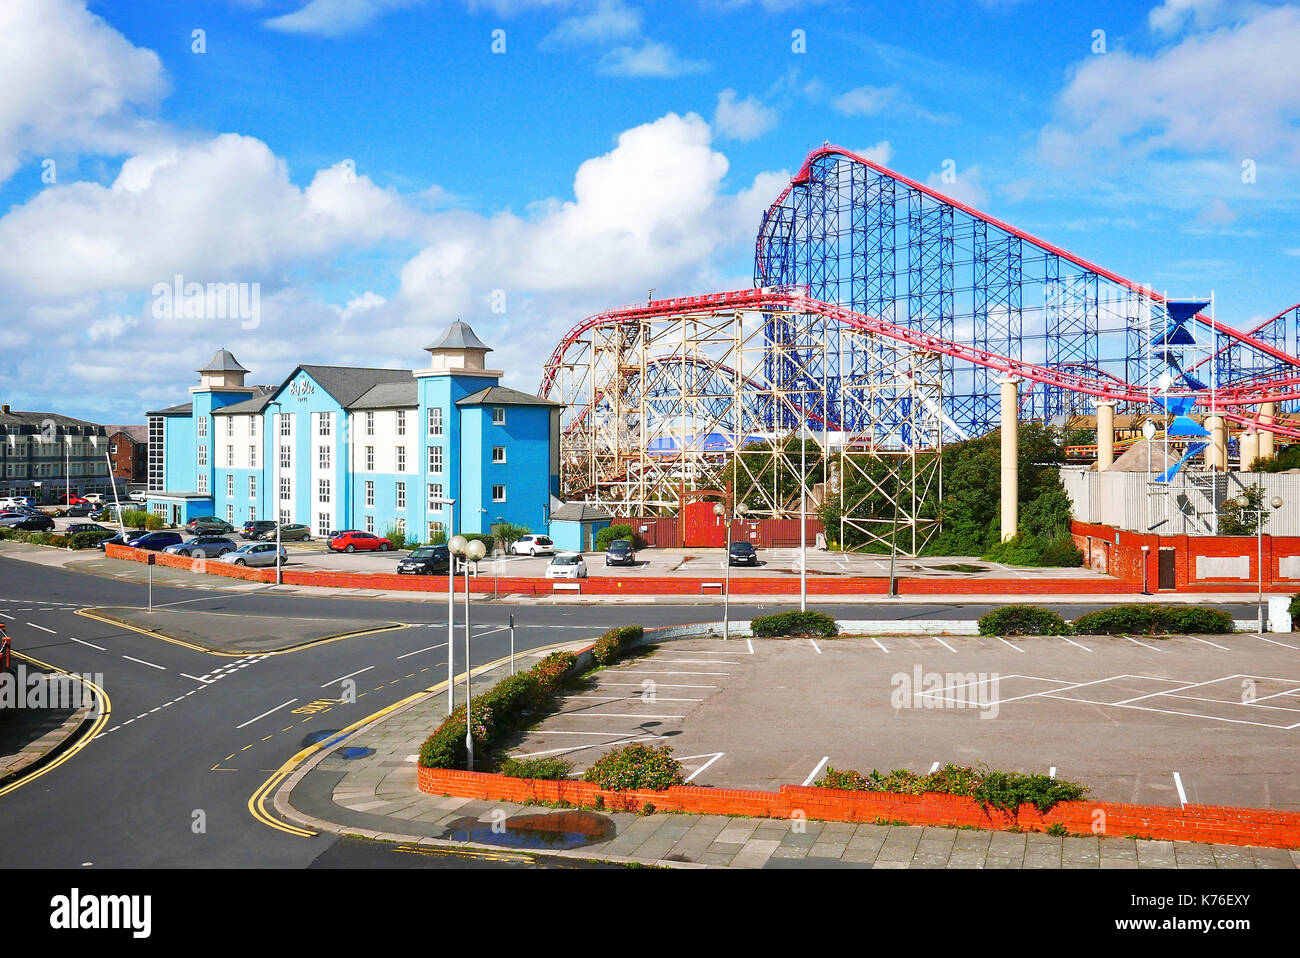 Le Big Blue Hotel et Le Parc d'attractions Pleasure Beach, Blackpool, Lancashire, Royaume-Uni Banque D'Images